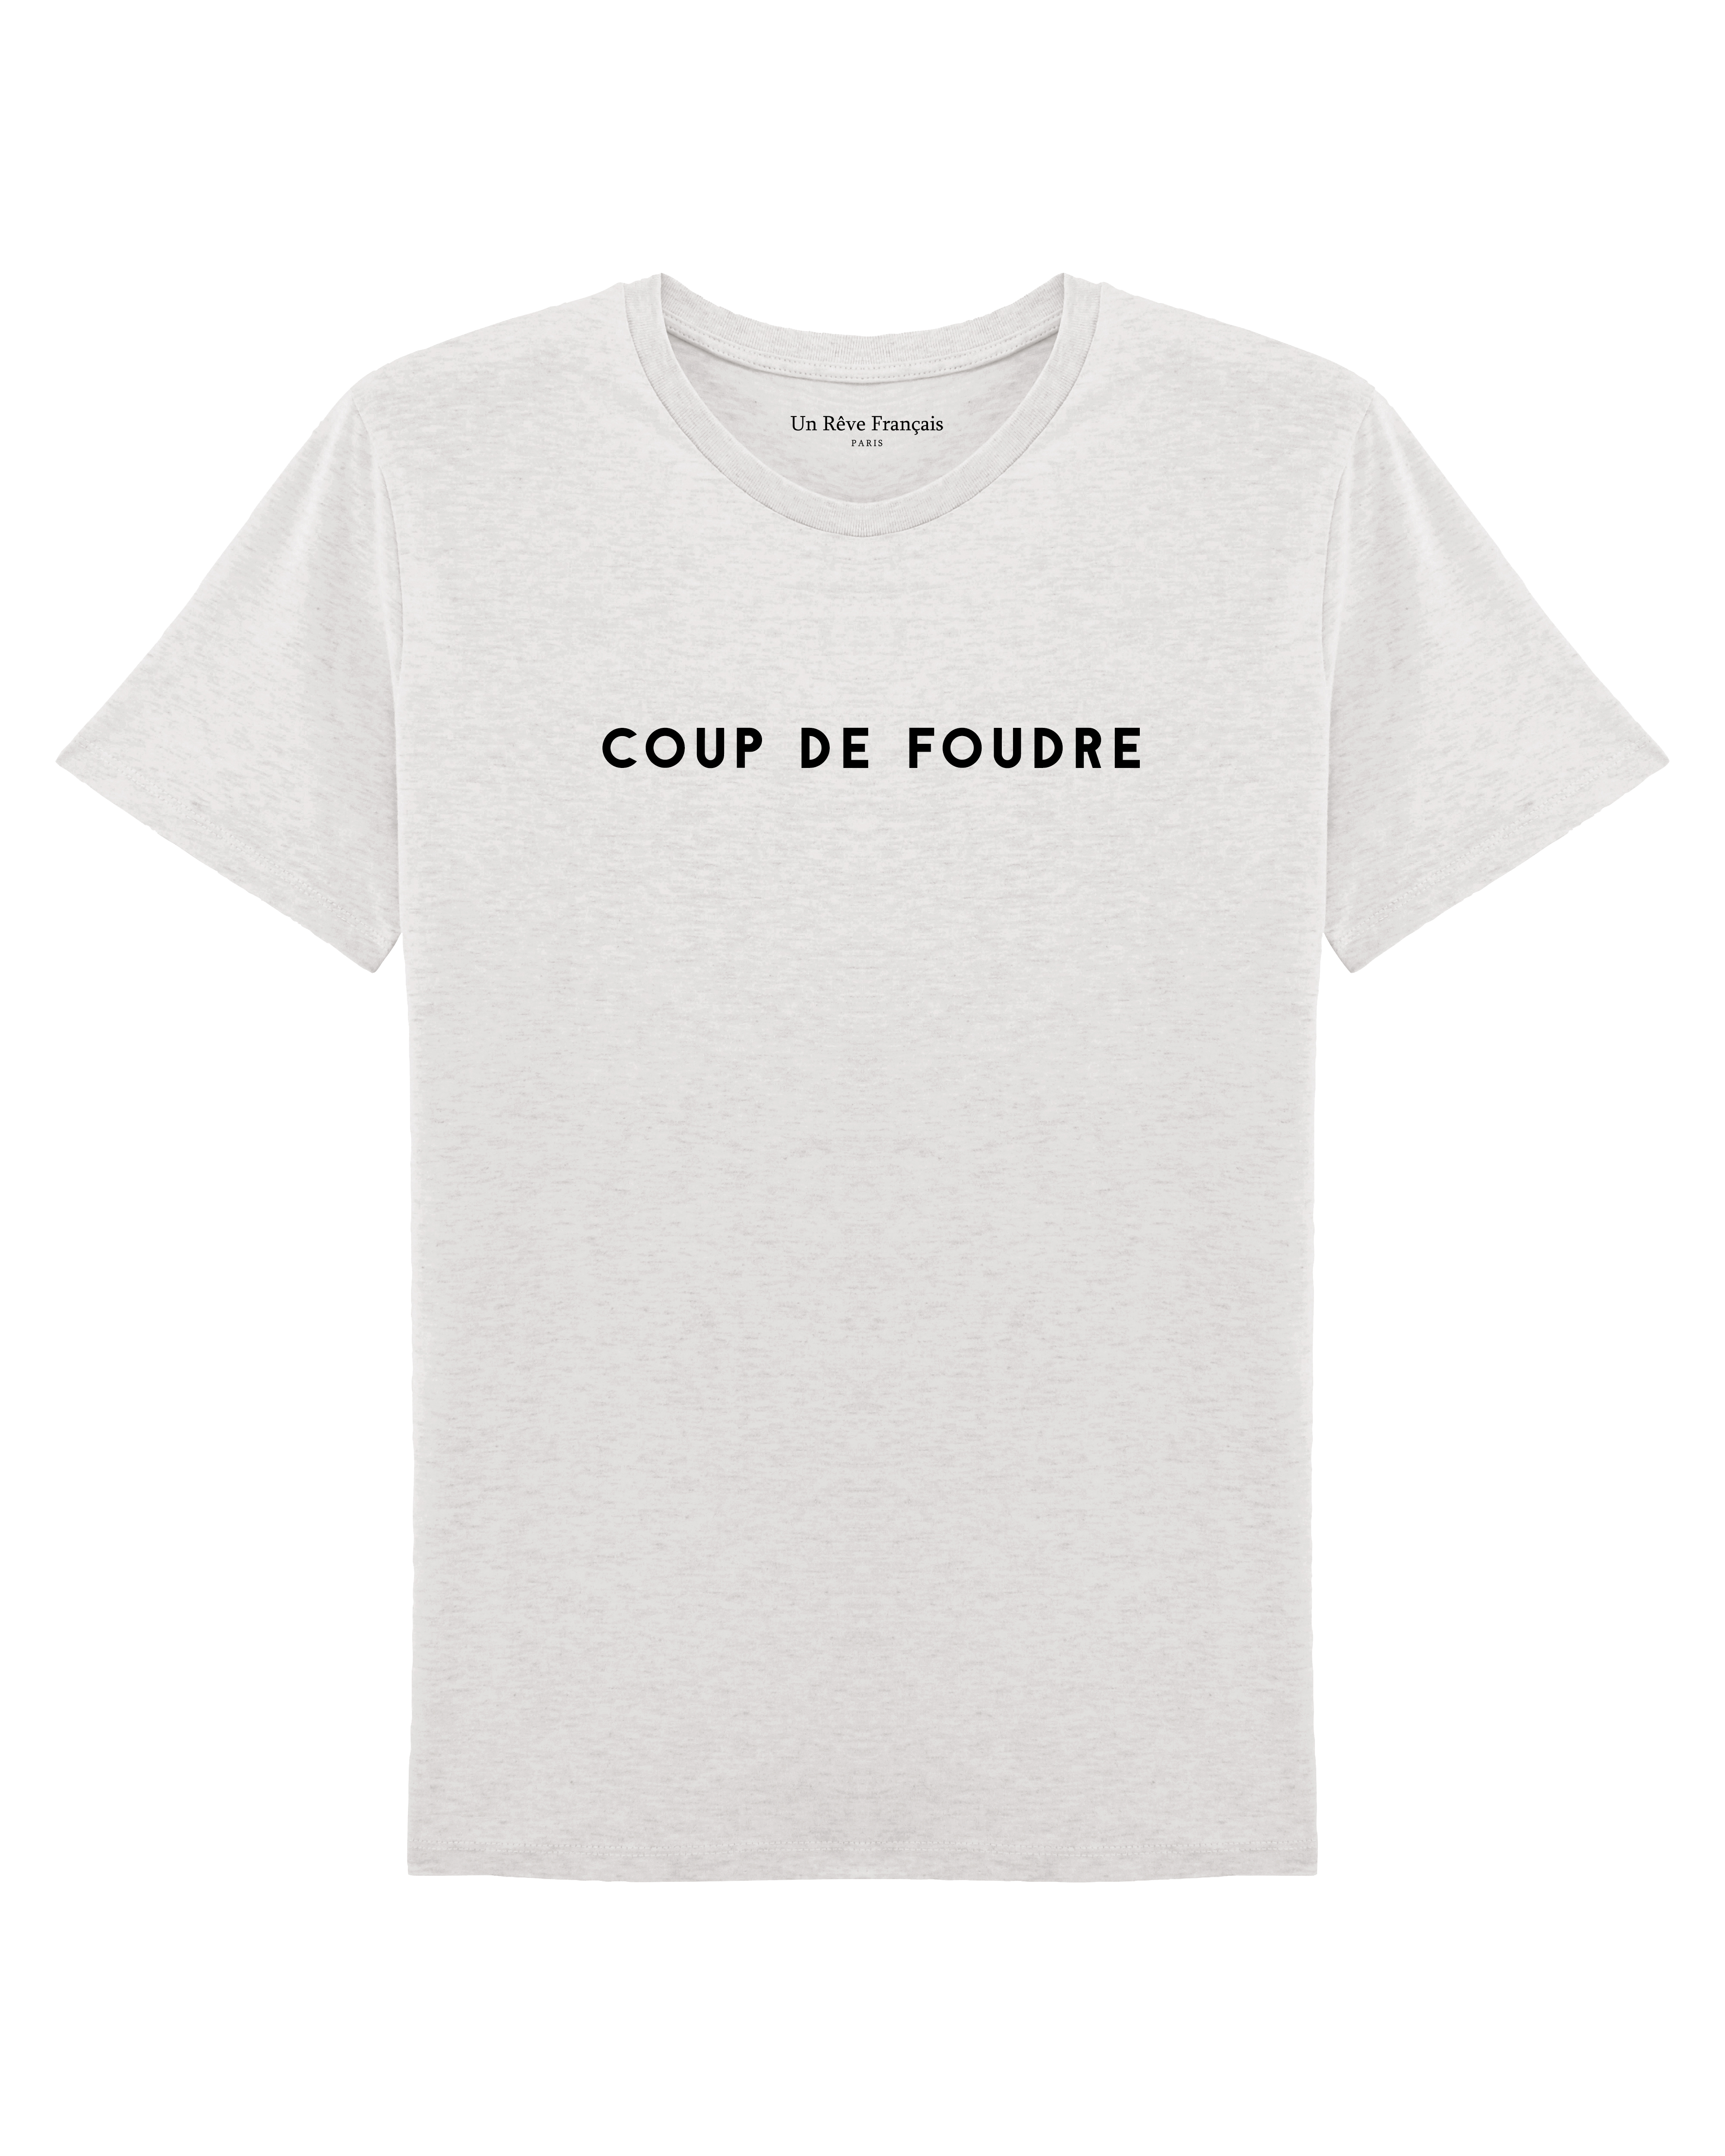 T-shirt "Coup de foudre"